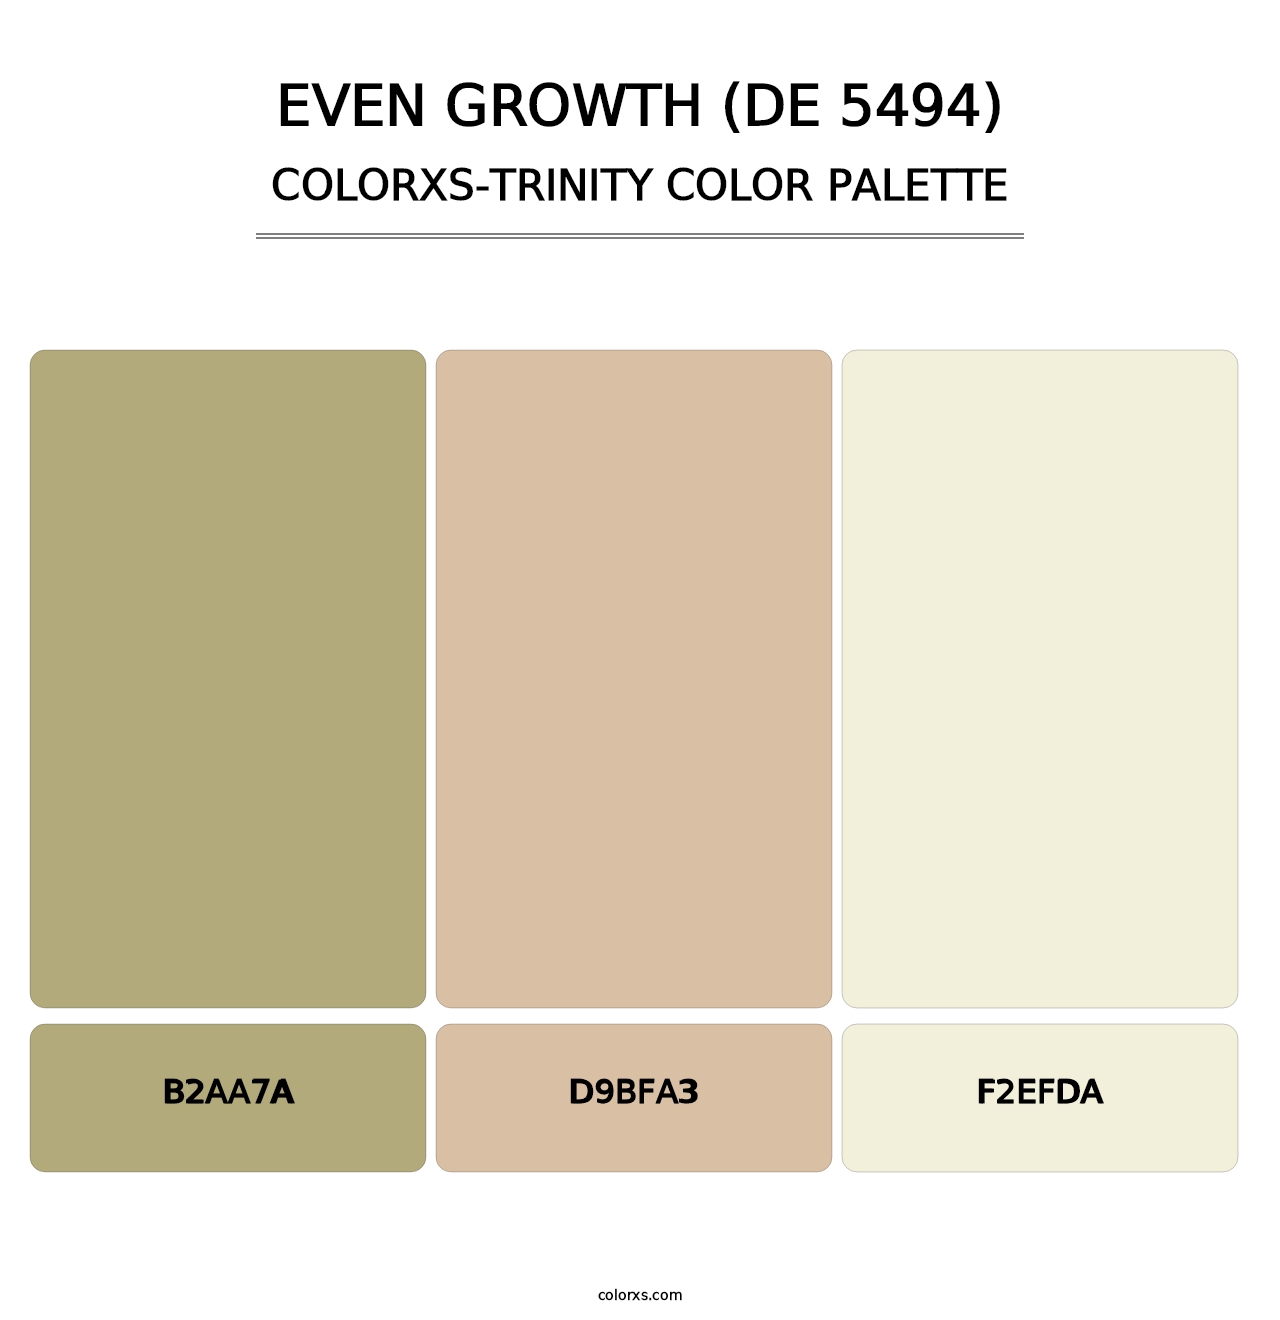 Even Growth (DE 5494) - Colorxs Trinity Palette